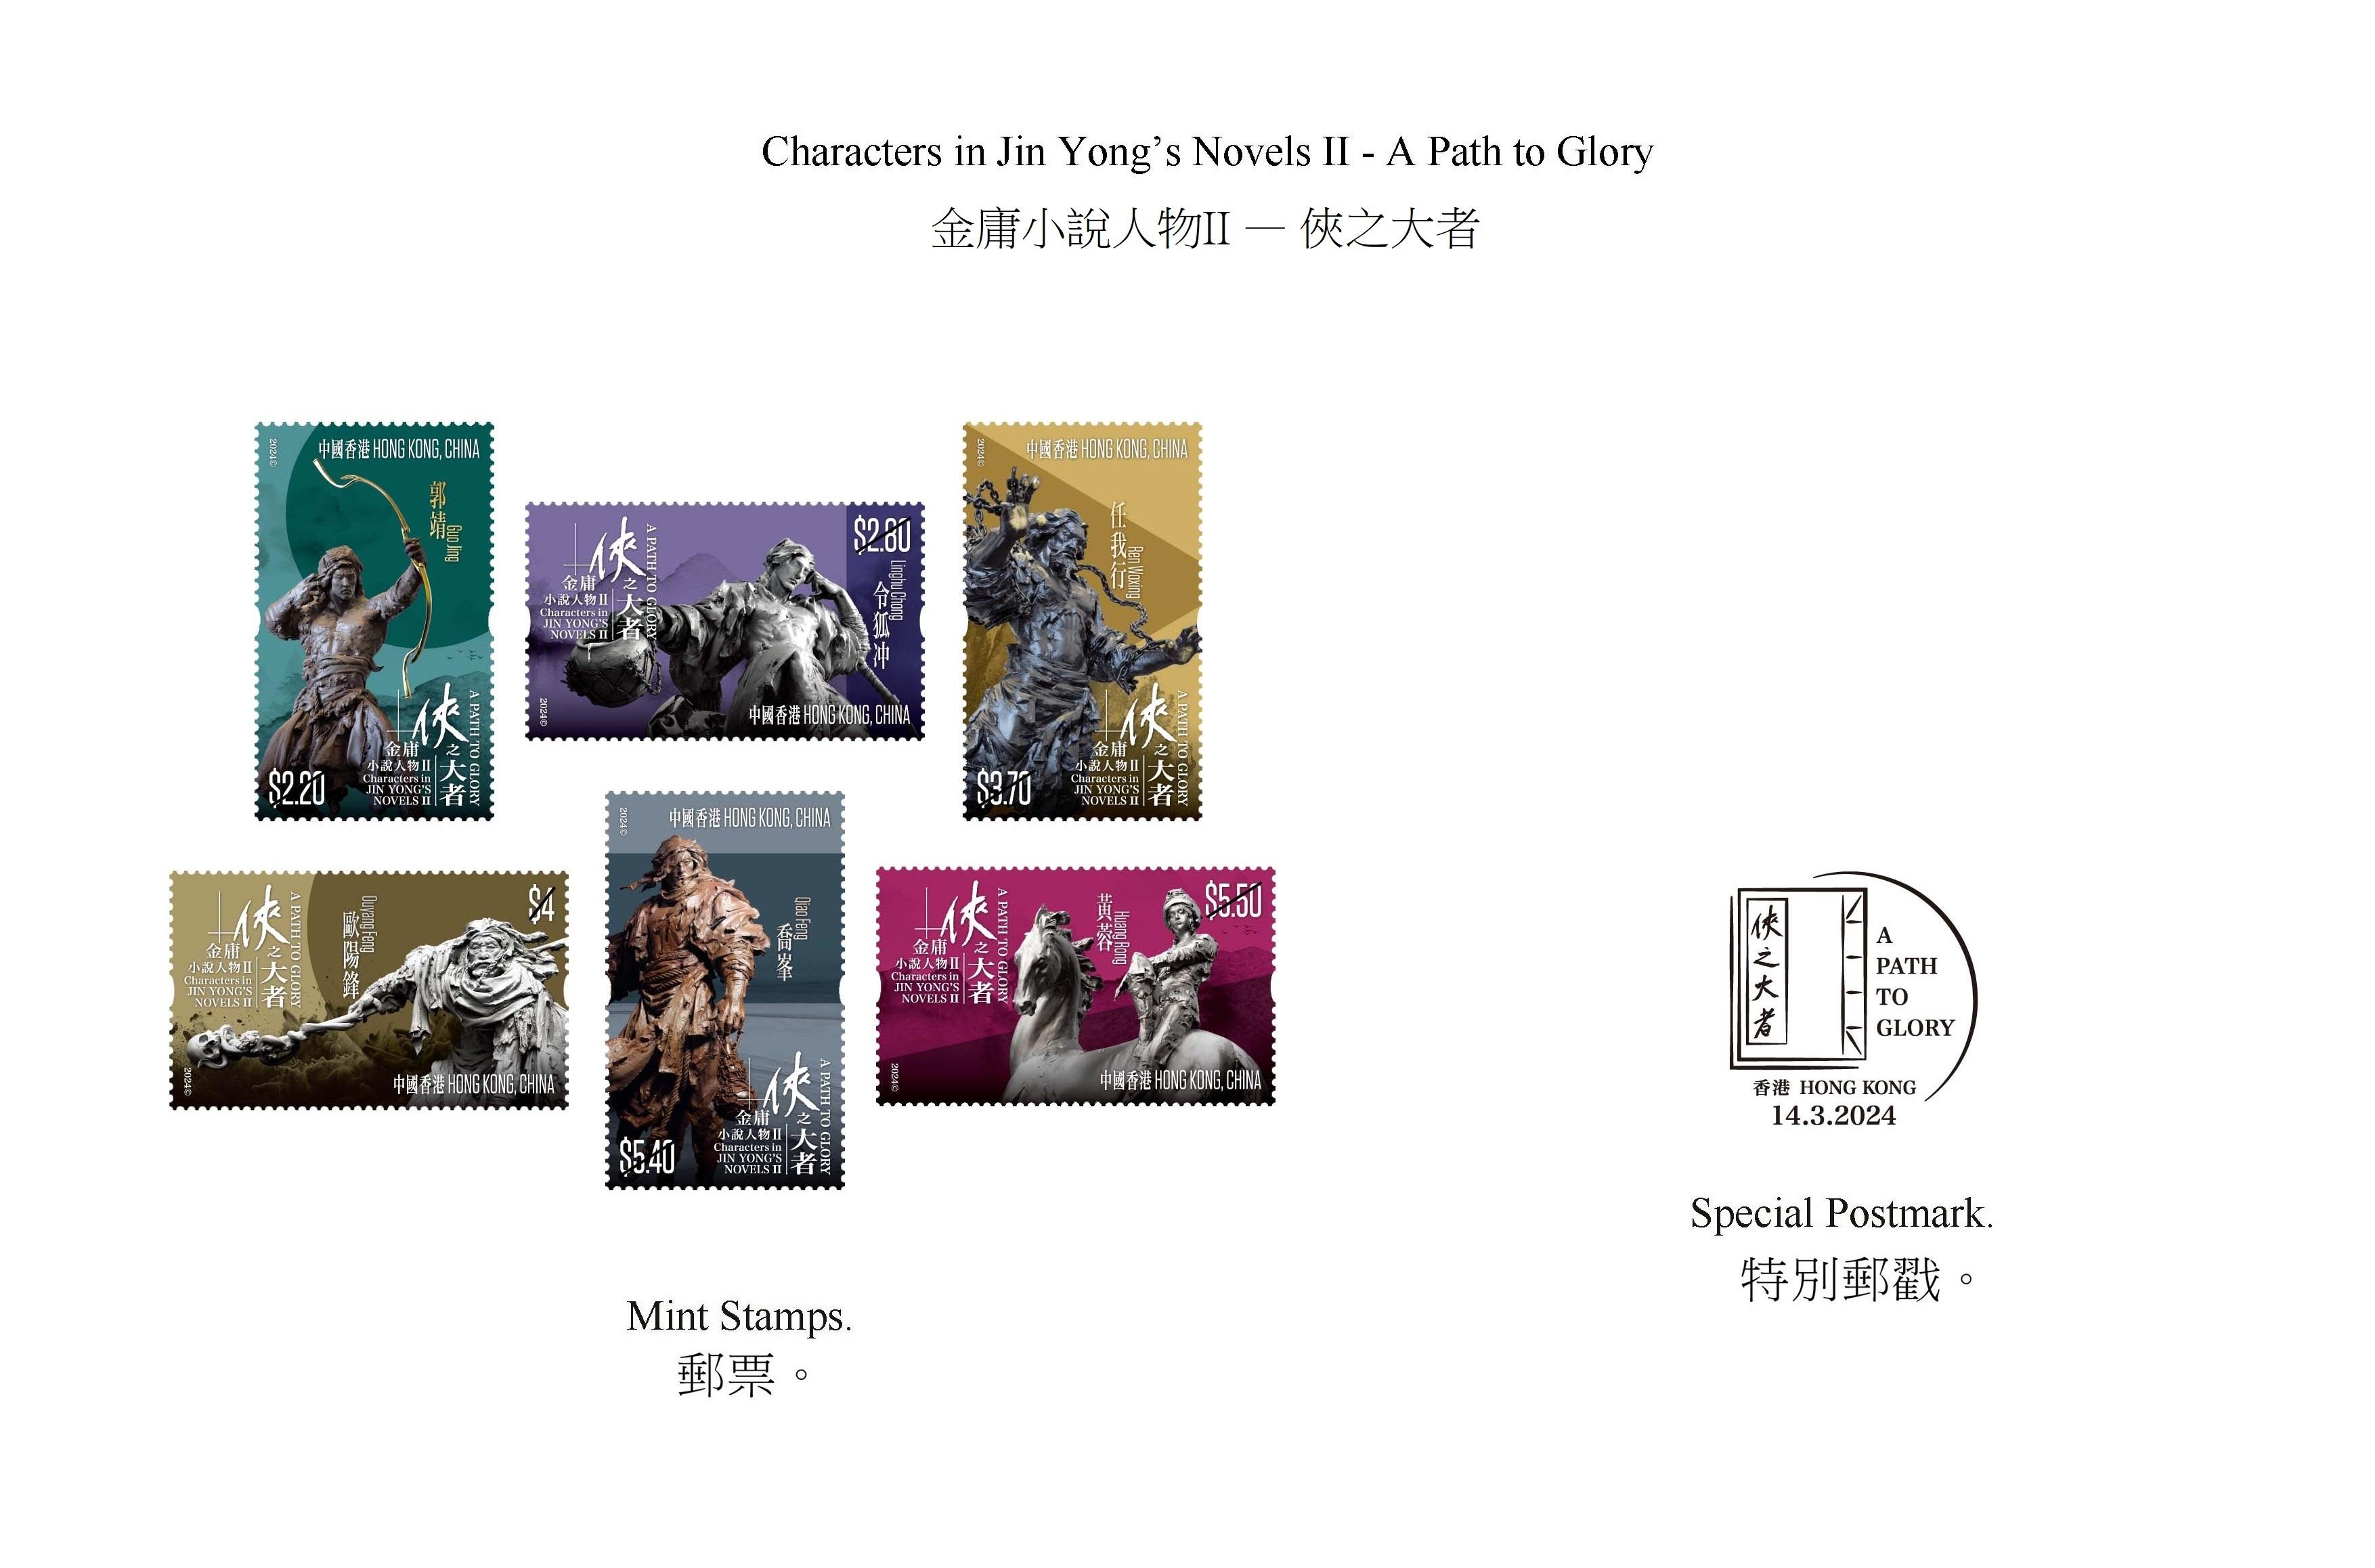 香港邮政三月十四日（星期四）发行以「金庸小说人物II──侠之大者」为题的特别邮票及相关集邮品。图示邮票和特别邮戳。